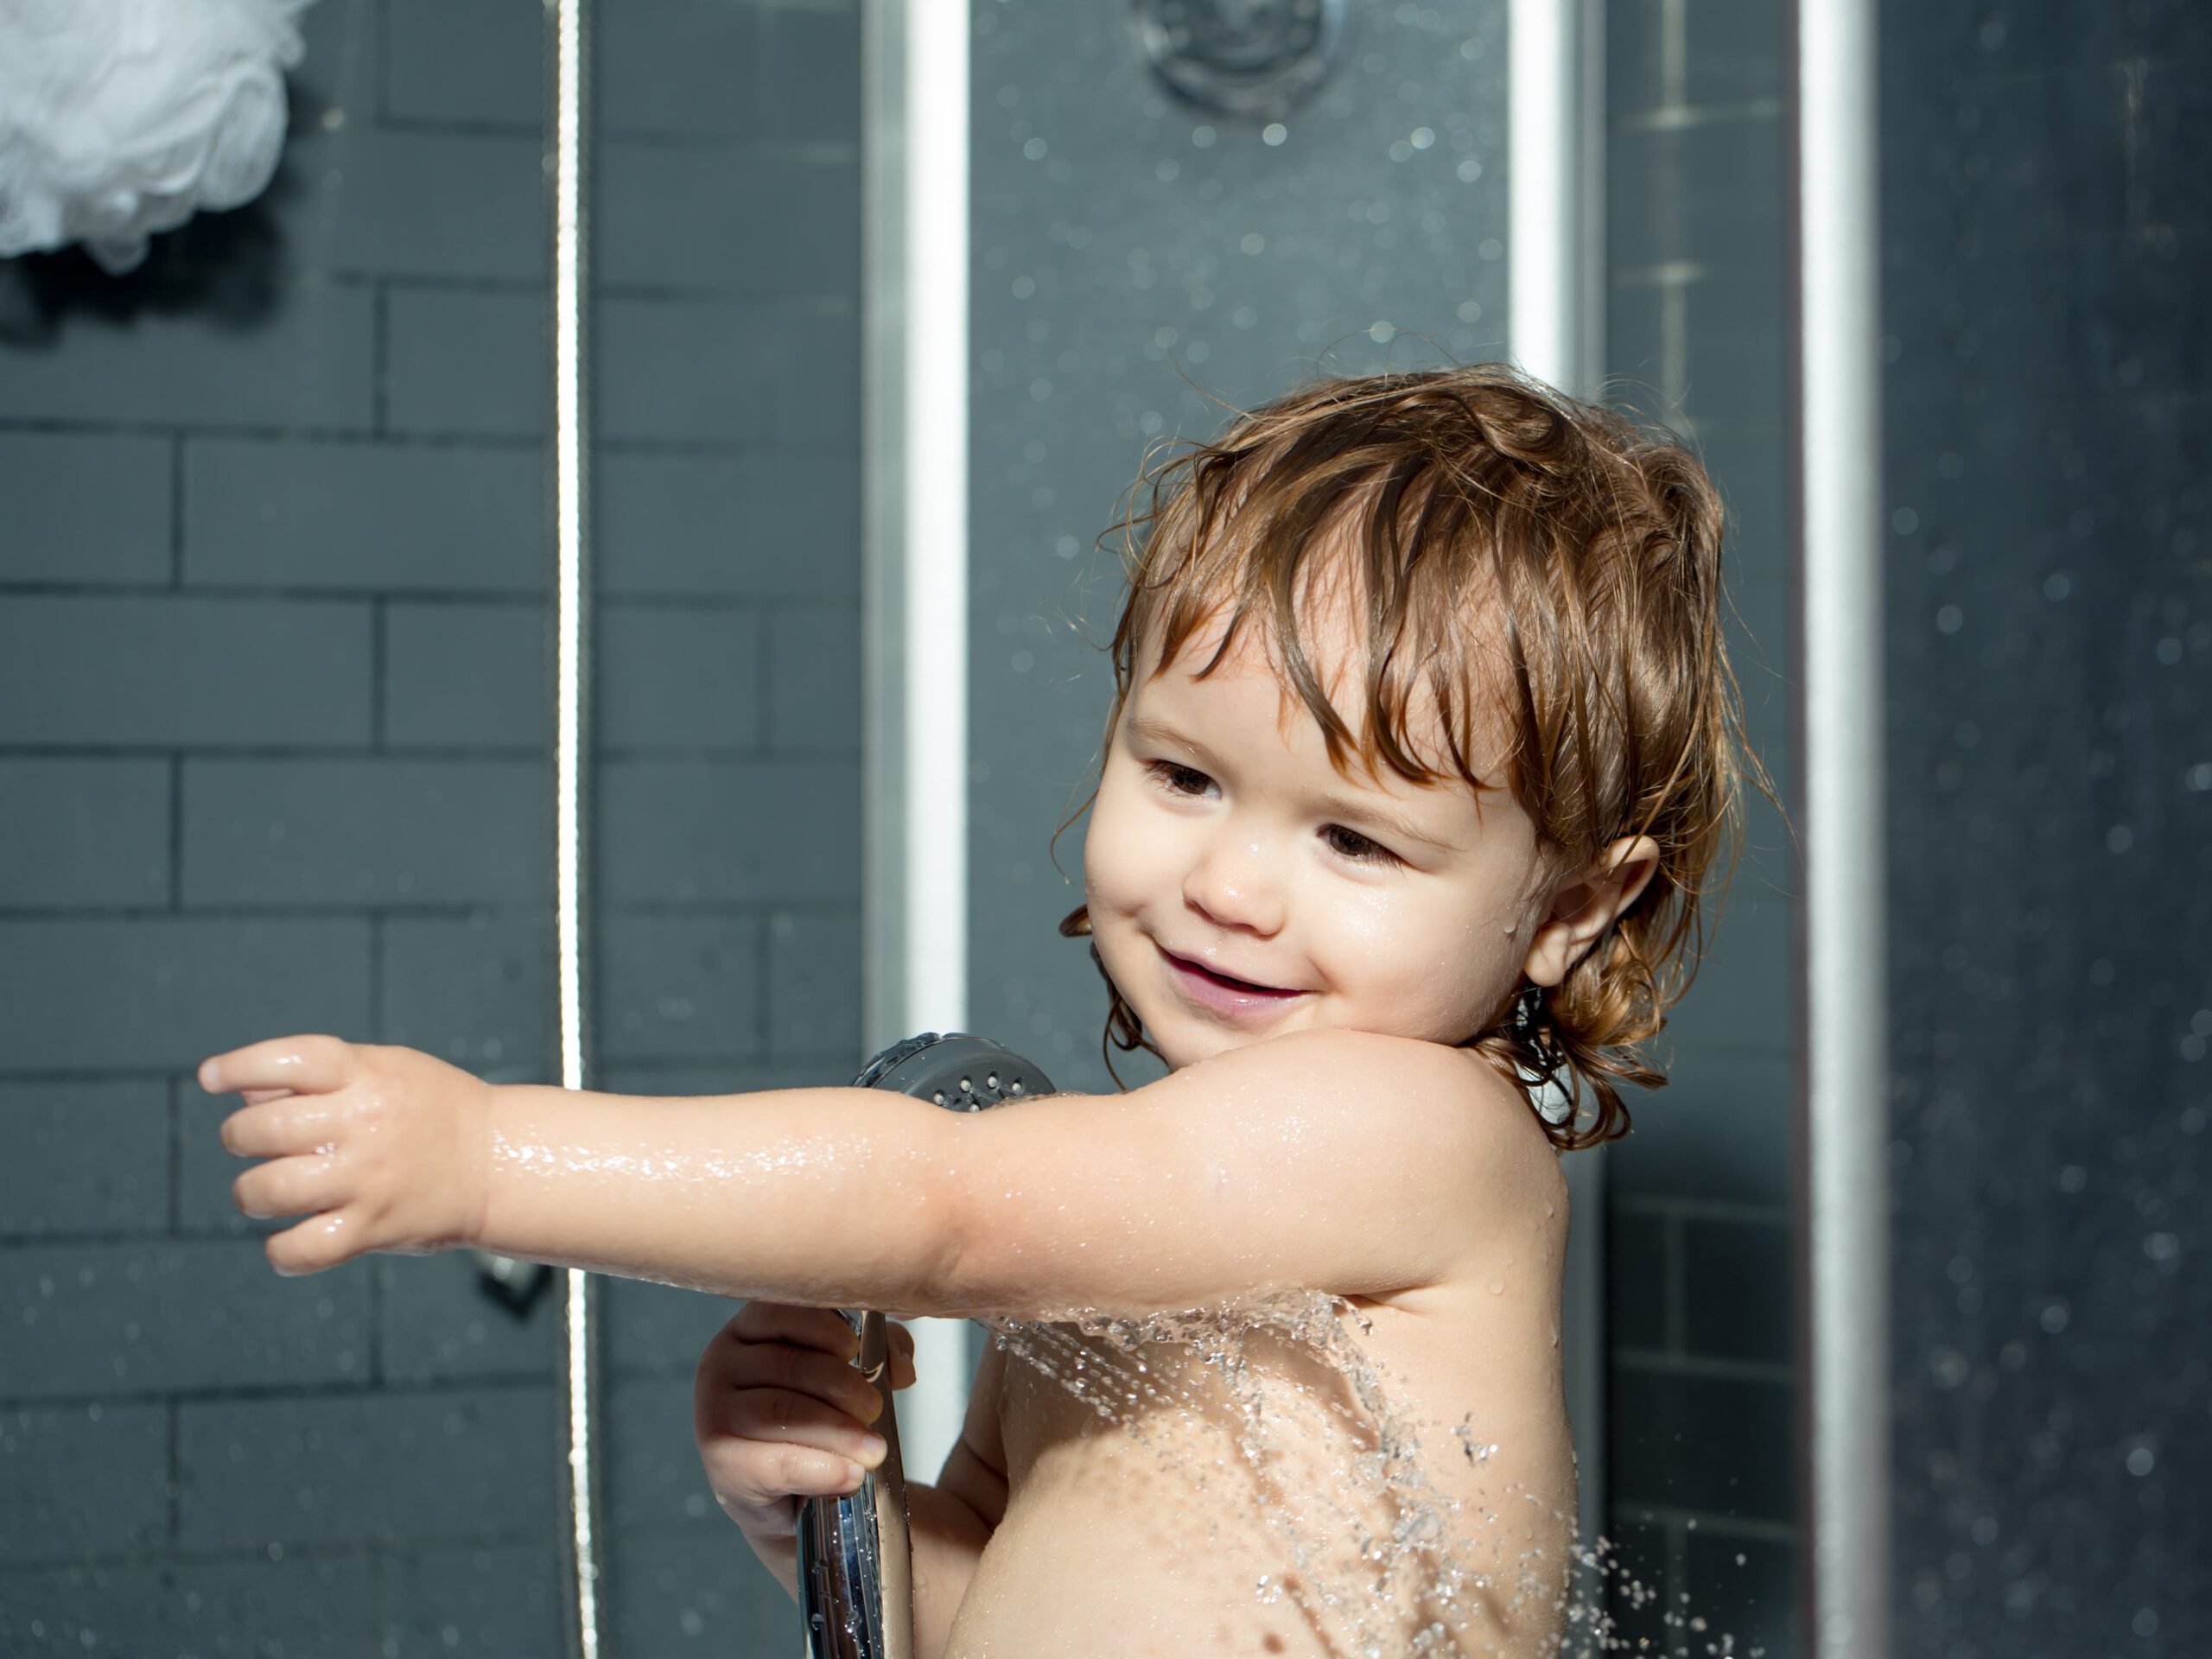 Diversión garantizada: Platos de ducha a prueba de travesuras